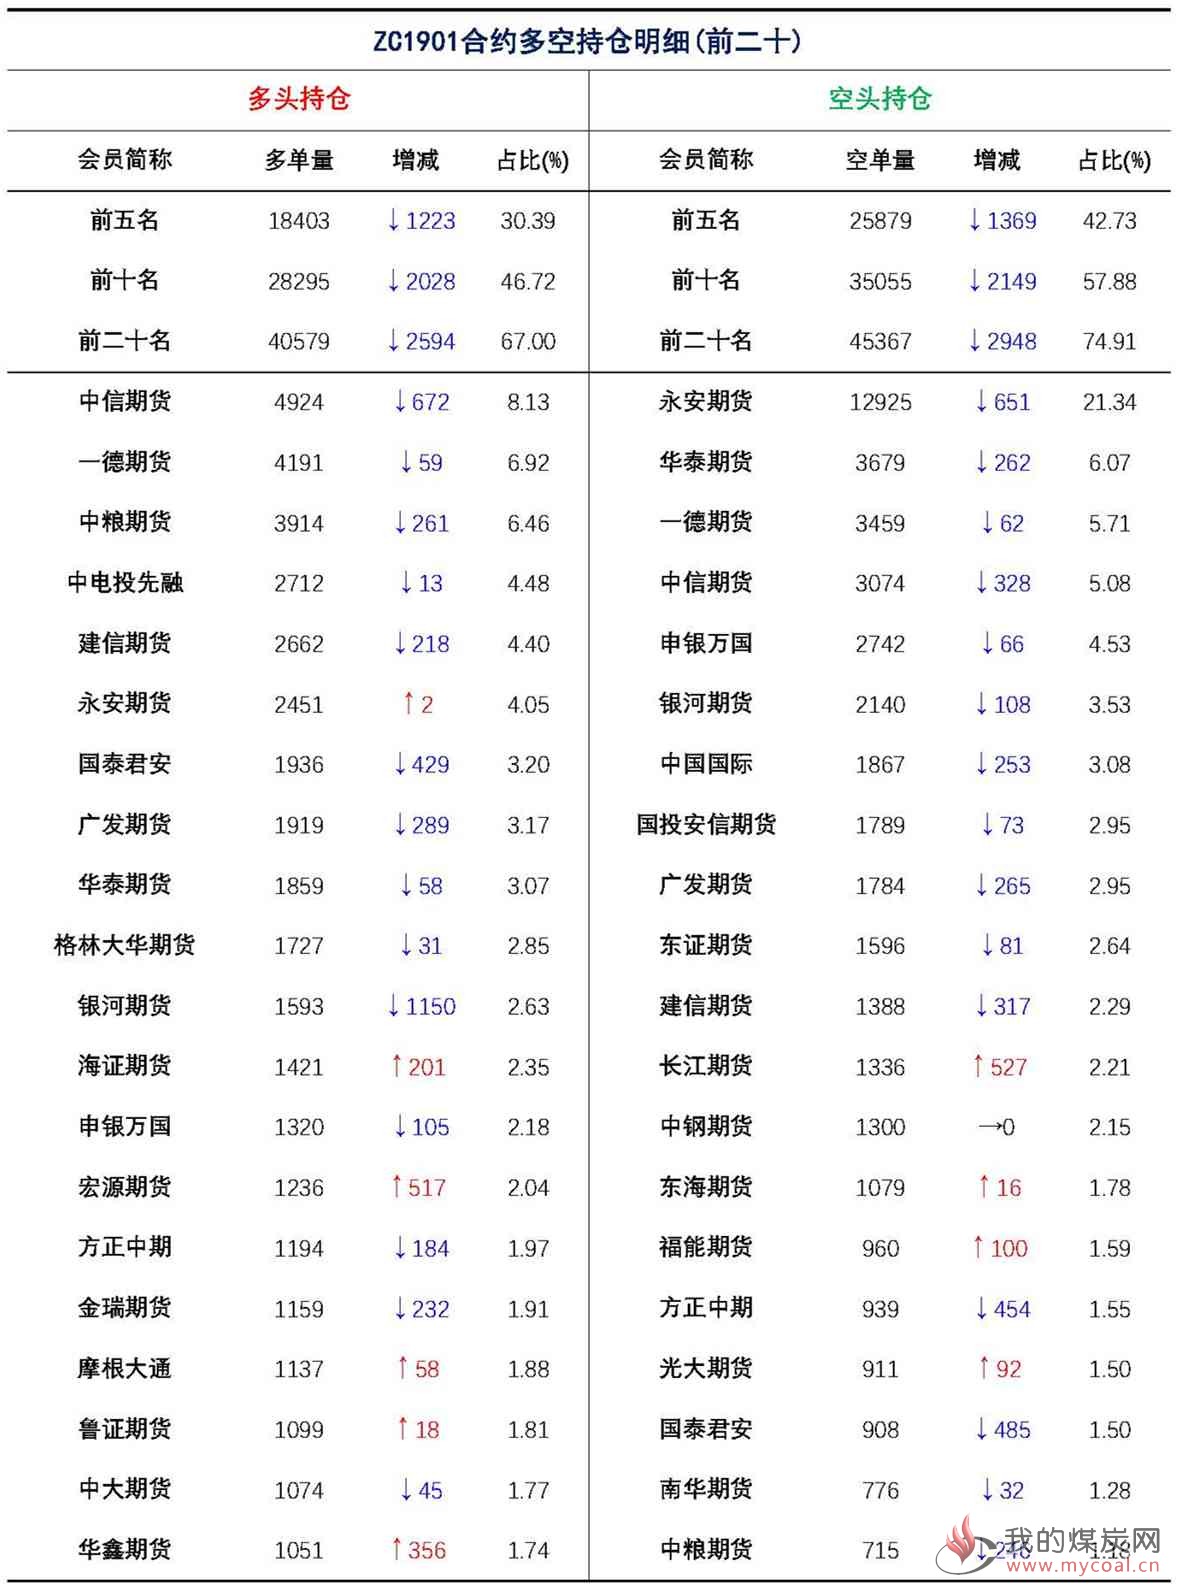 【上海煤交所】12月10日动力煤期货日报(1)_页面_09